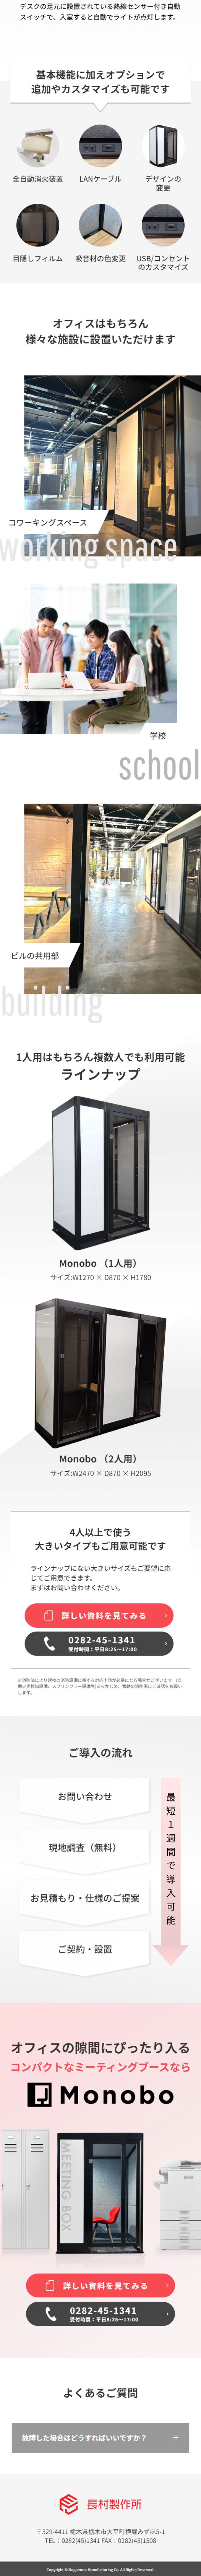 Monobo_sp_2